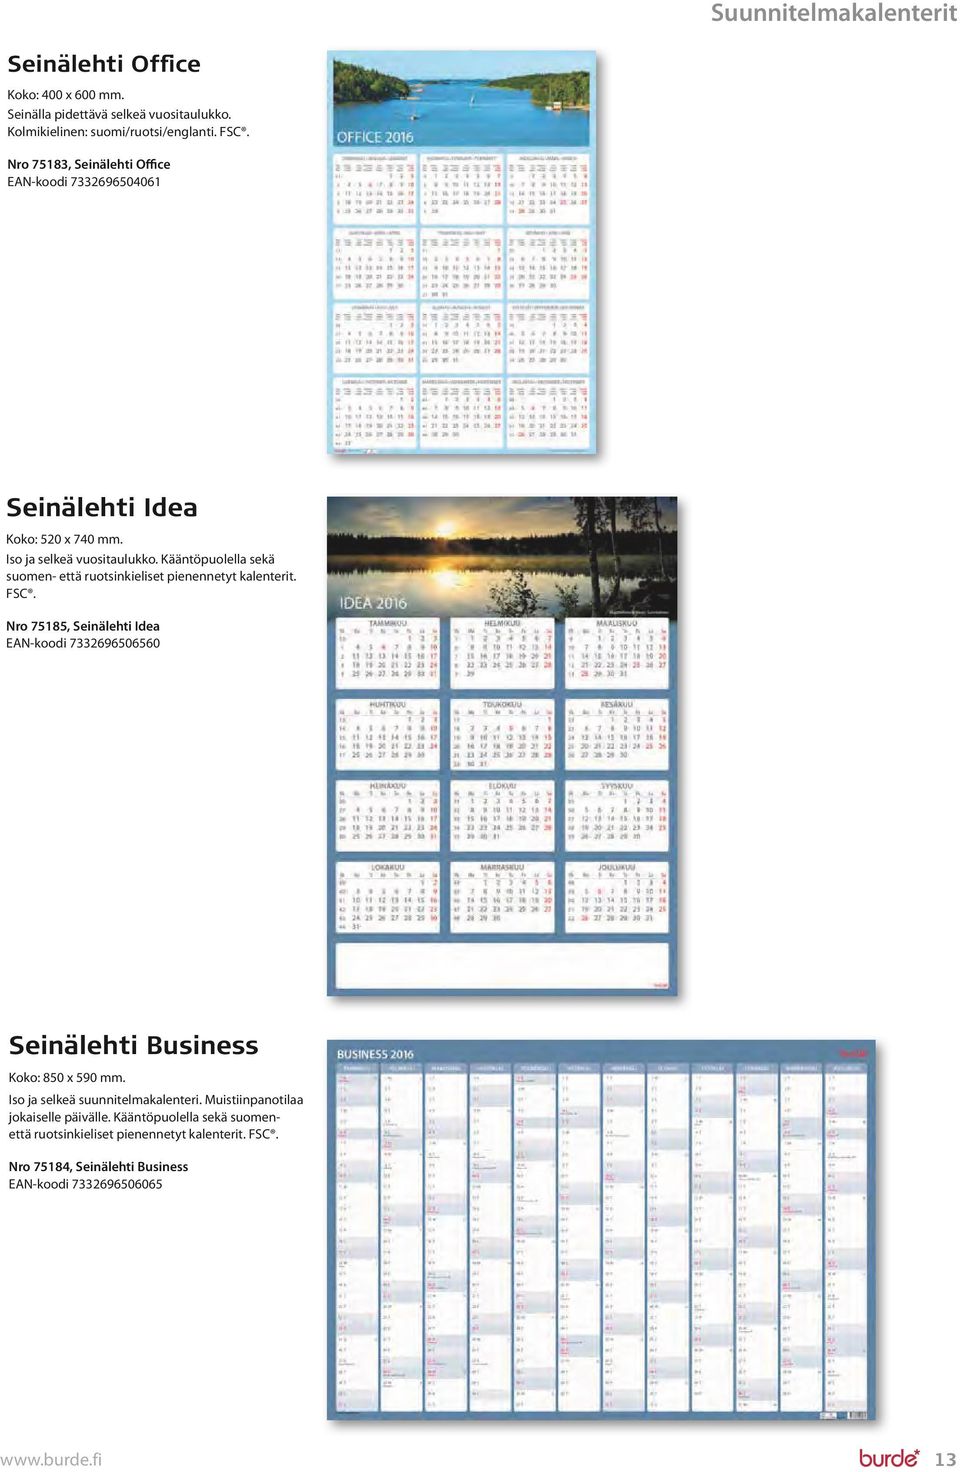 Kääntöpuolella sekä suomen- että ruotsinkieliset pienennetyt kalenterit. FSC.